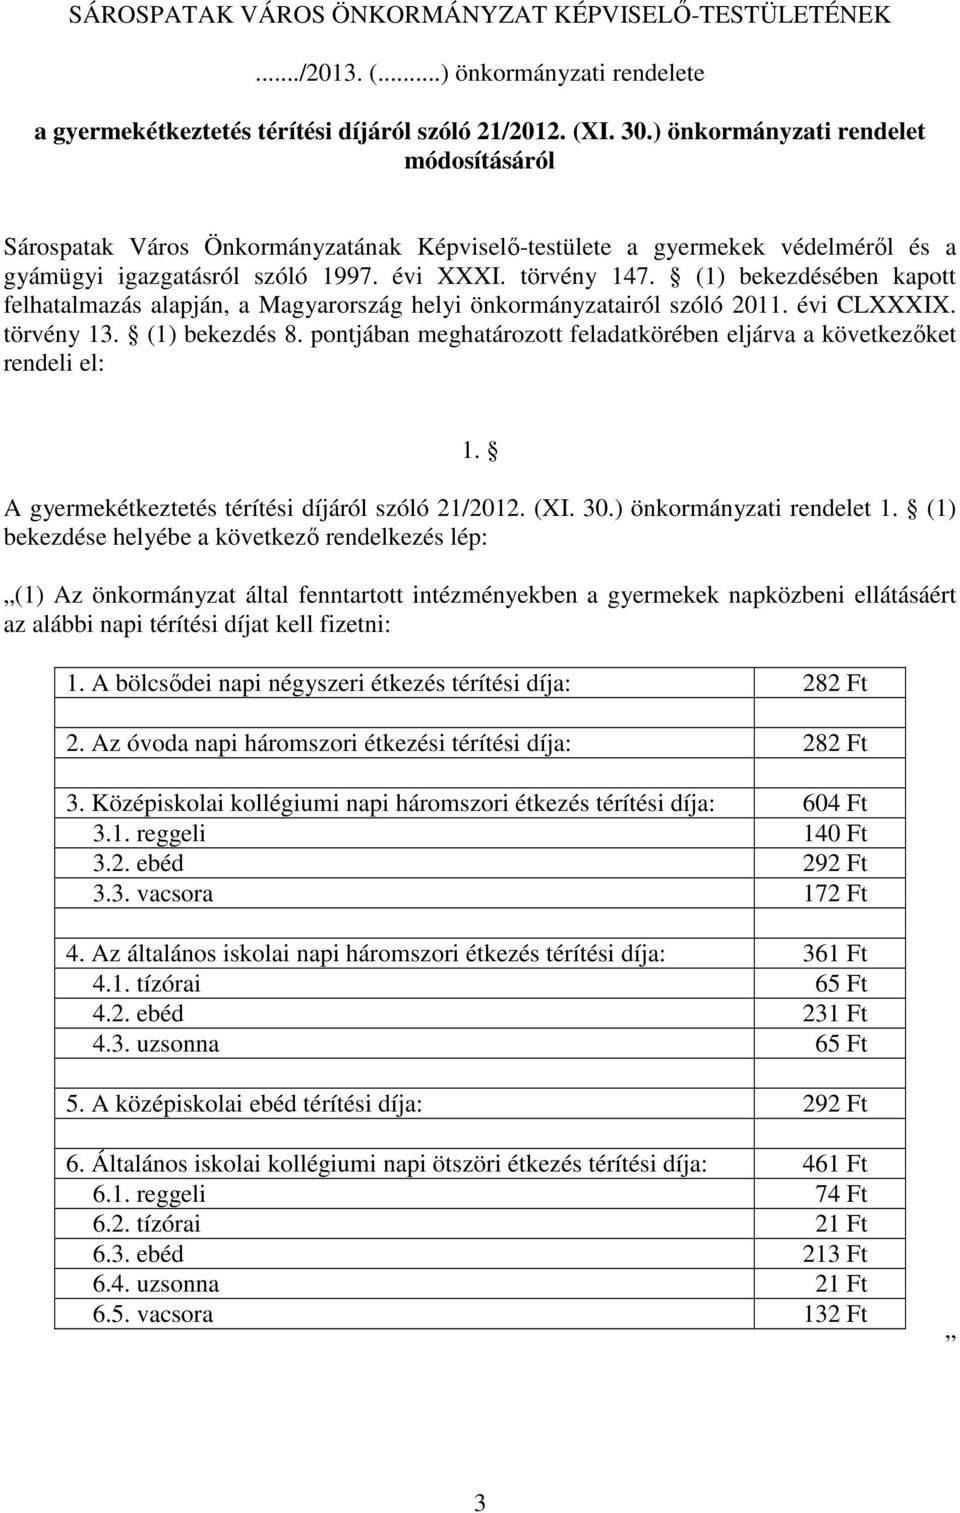 (1) bekezdésében kapott felhatalmazás alapján, a Magyarország helyi önkormányzatairól szóló 2011. évi CLXXXIX. törvény 13. (1) bekezdés 8.